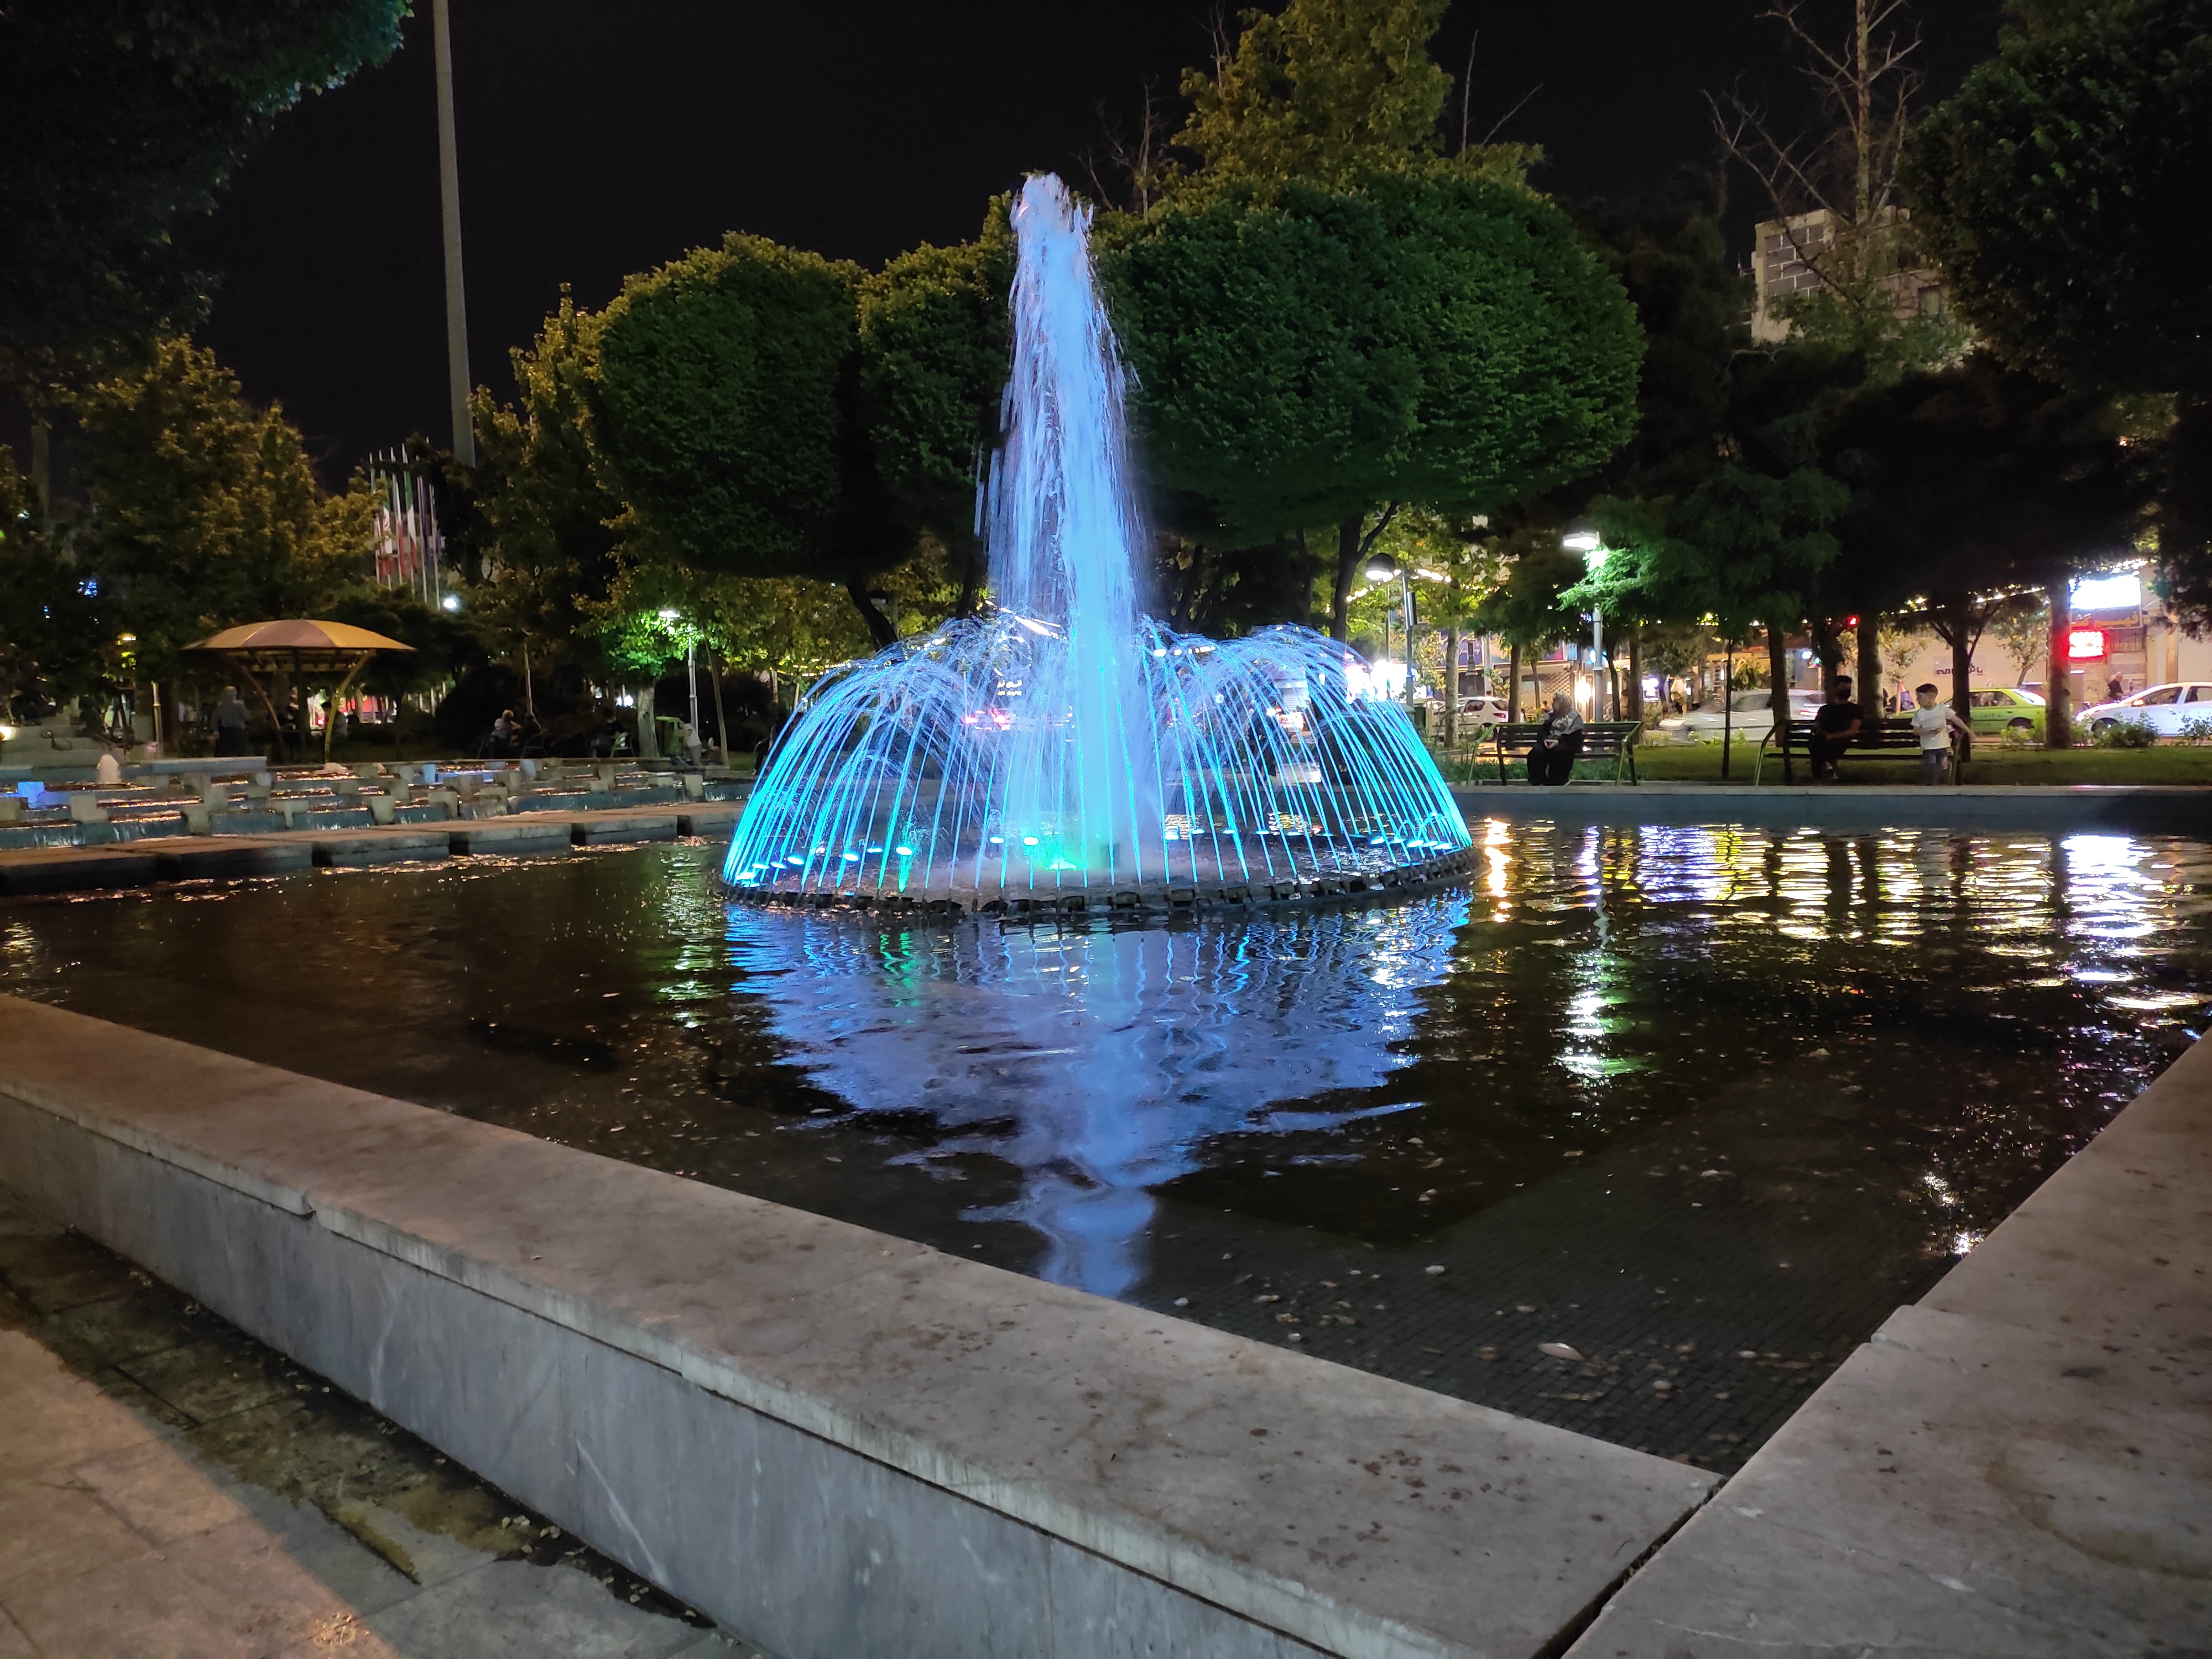 عکس نمونه دوربین اصلی ردمی نوت ۱۰ در نور کم - فواره ای در پارک میدان هفت حوض